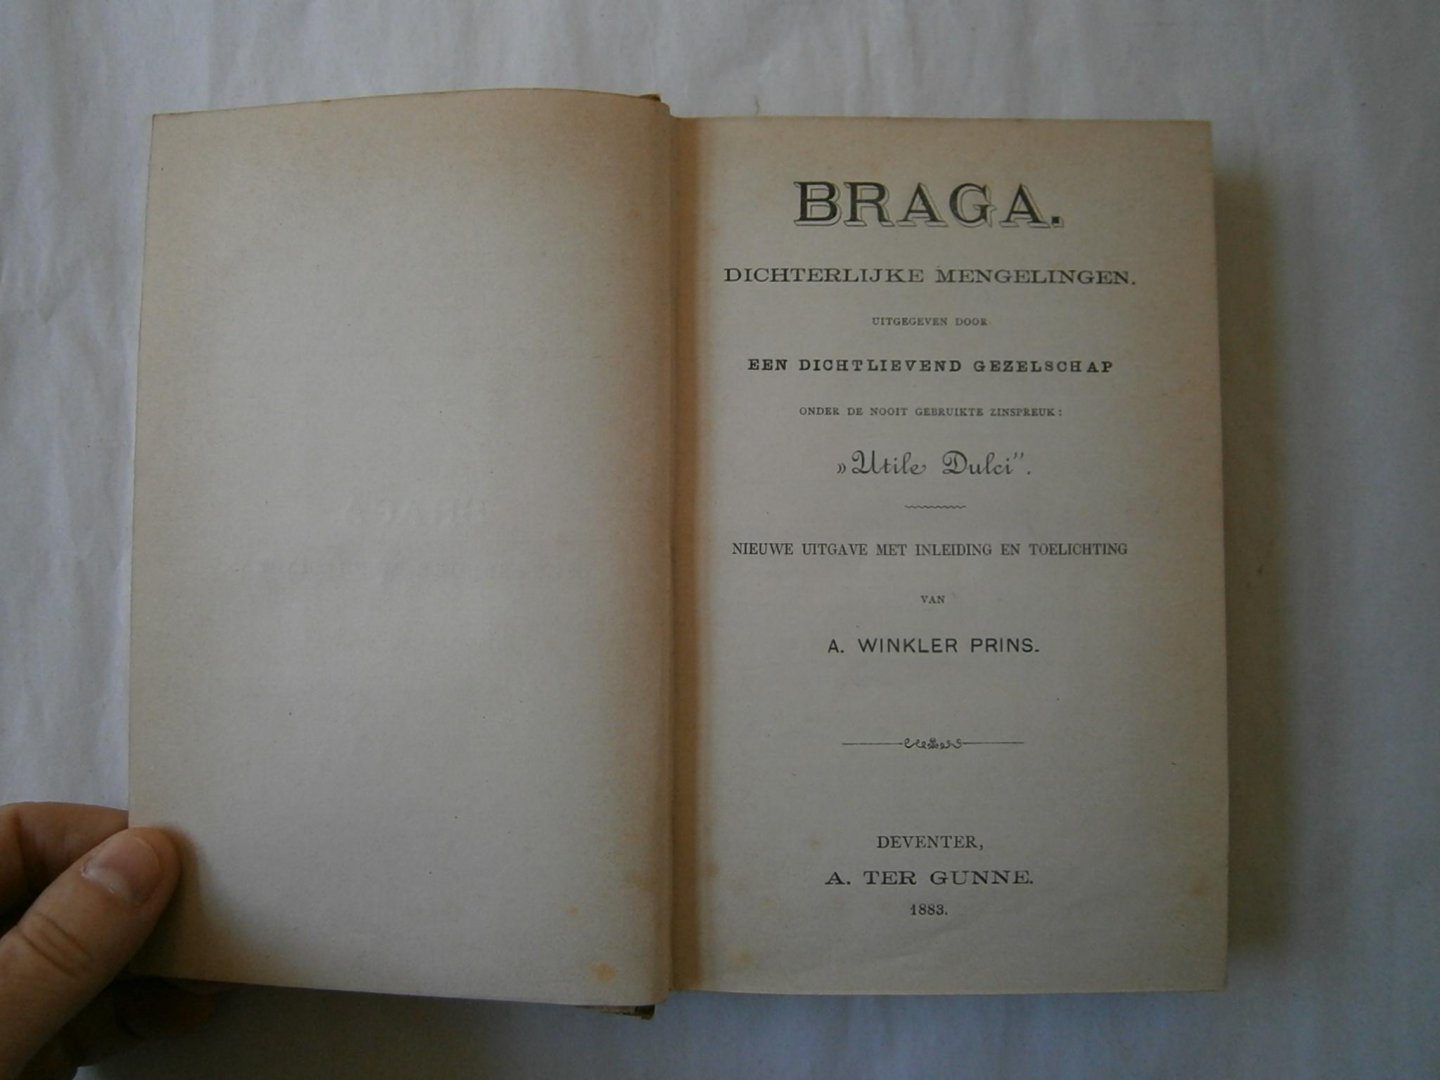 Winkler Prins, A. - Braga, dichterlijke mengelingen